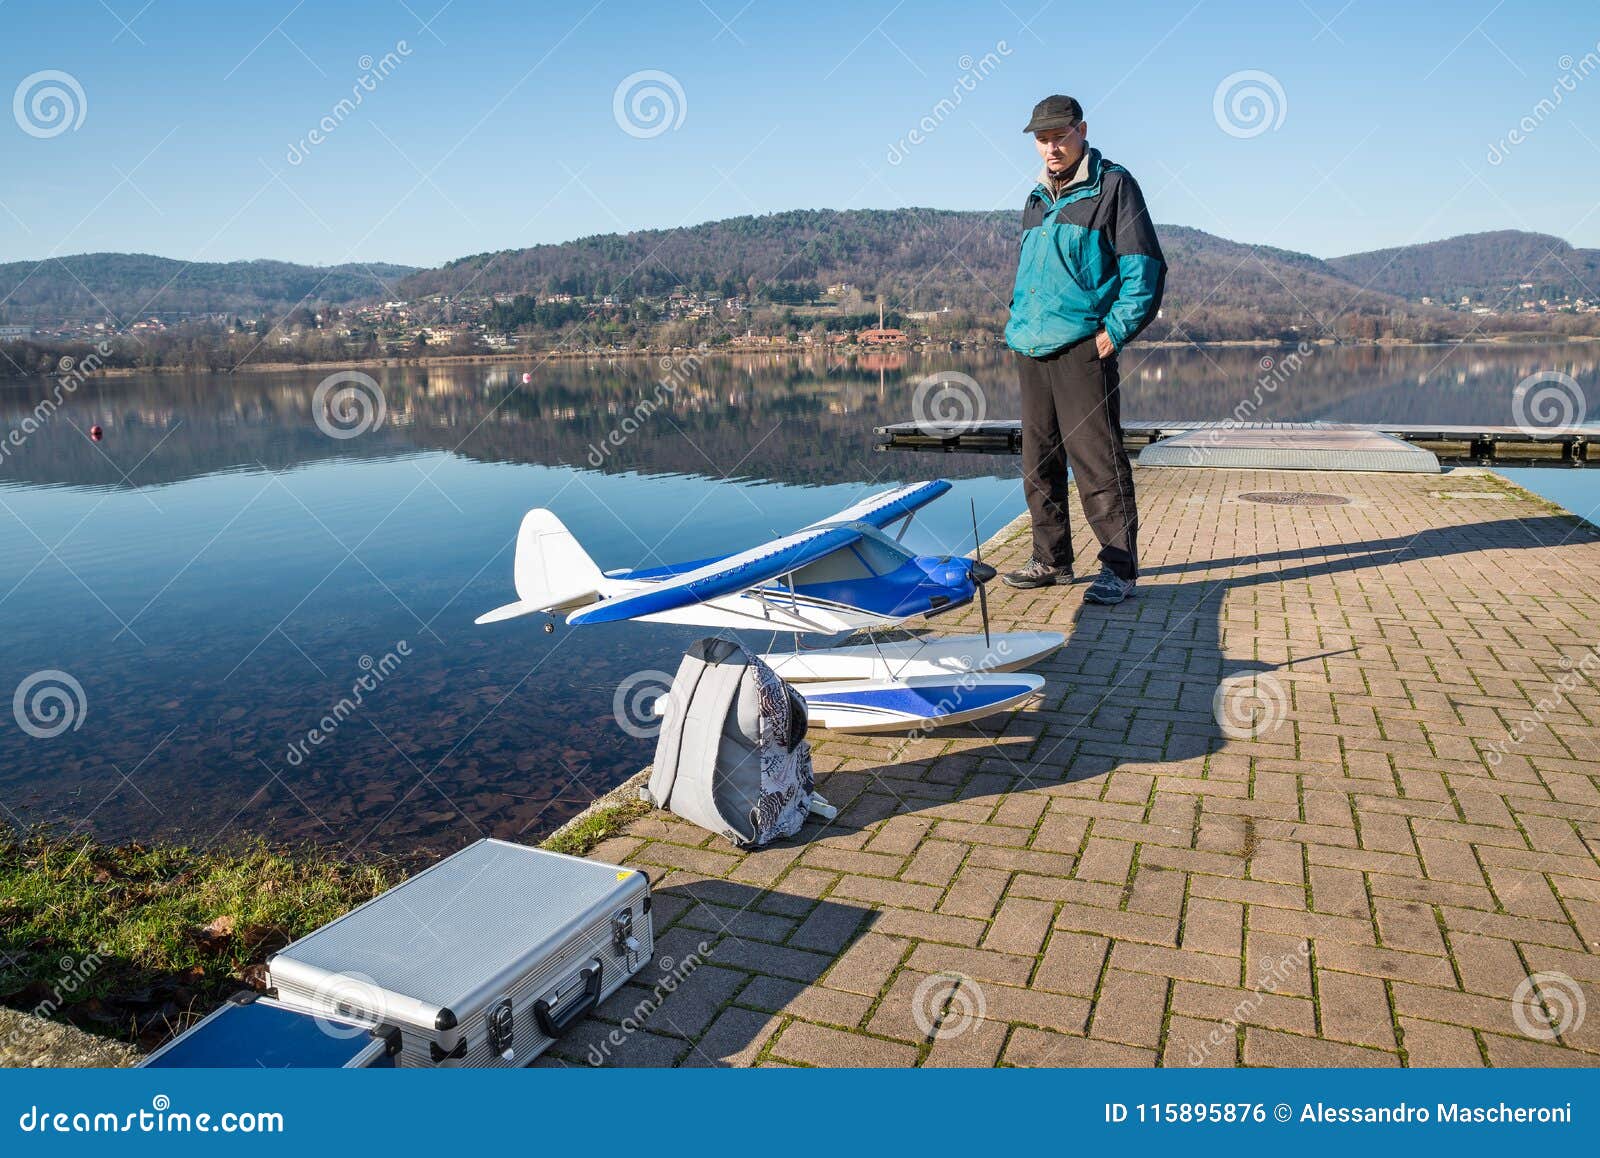 Radio Gecontroleerd RC-watervliegtuig - Image vliegen, modellering: 115895876